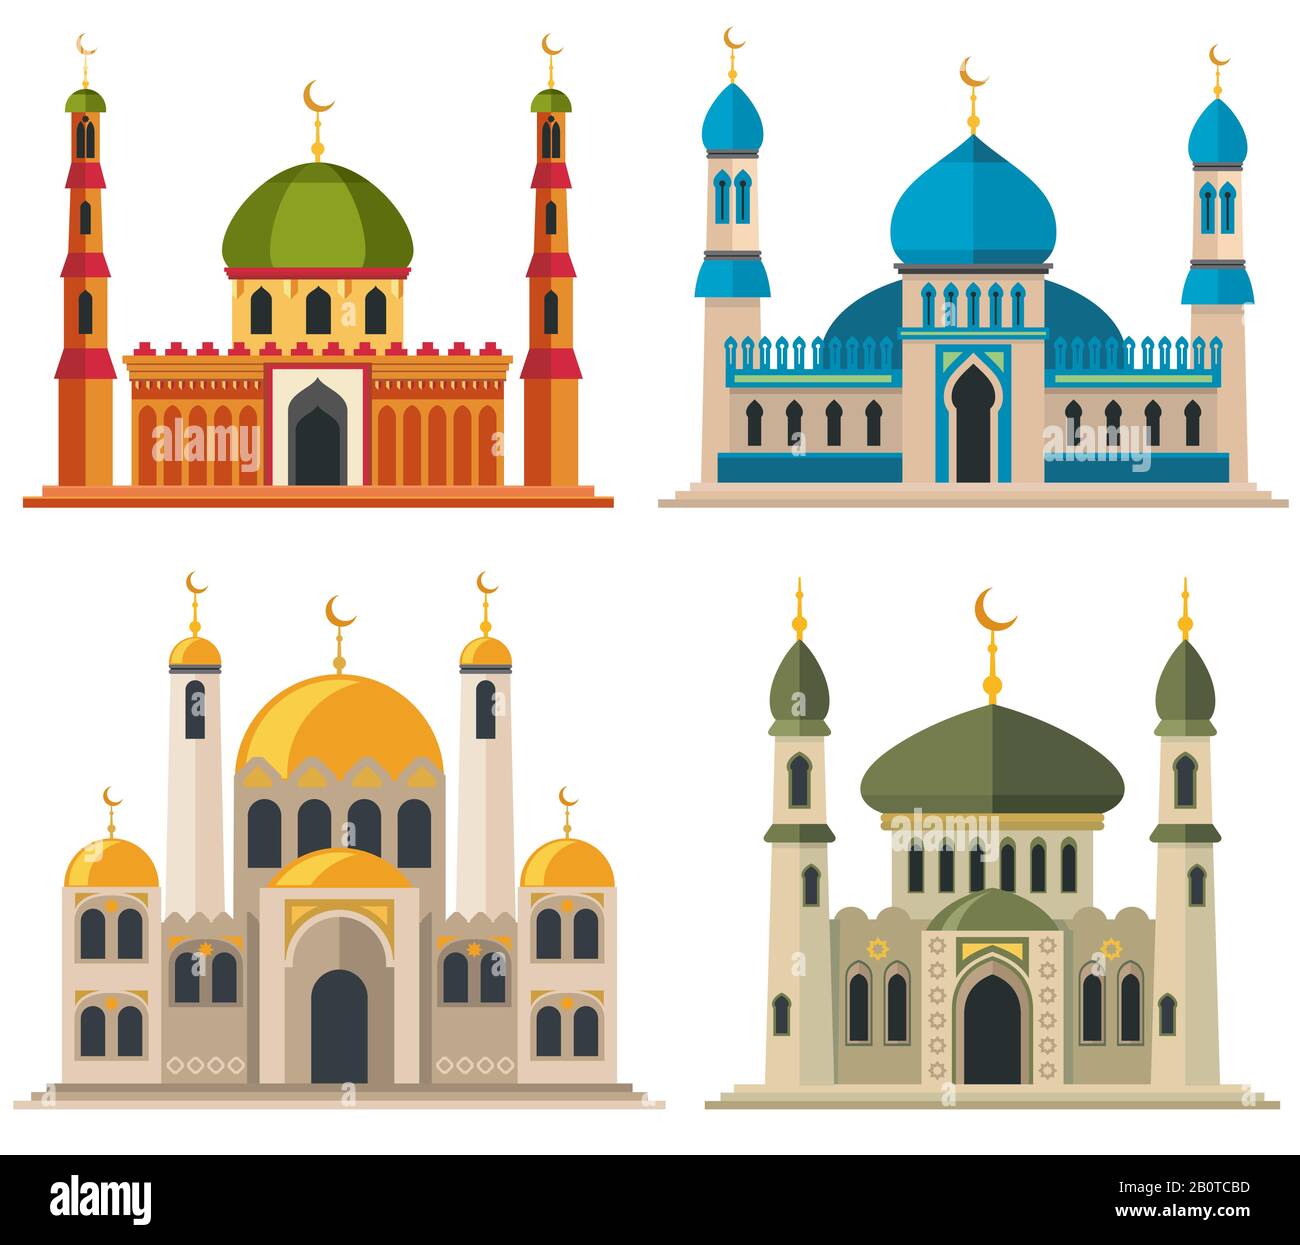 Arabische muslimische Moscheen und Minarette. Religiöse Cartoon-Gebäude der östlichen Architektur. Islam-Architektur traditionell, Illustration des religiösen islam-gebäudes Stock Vektor